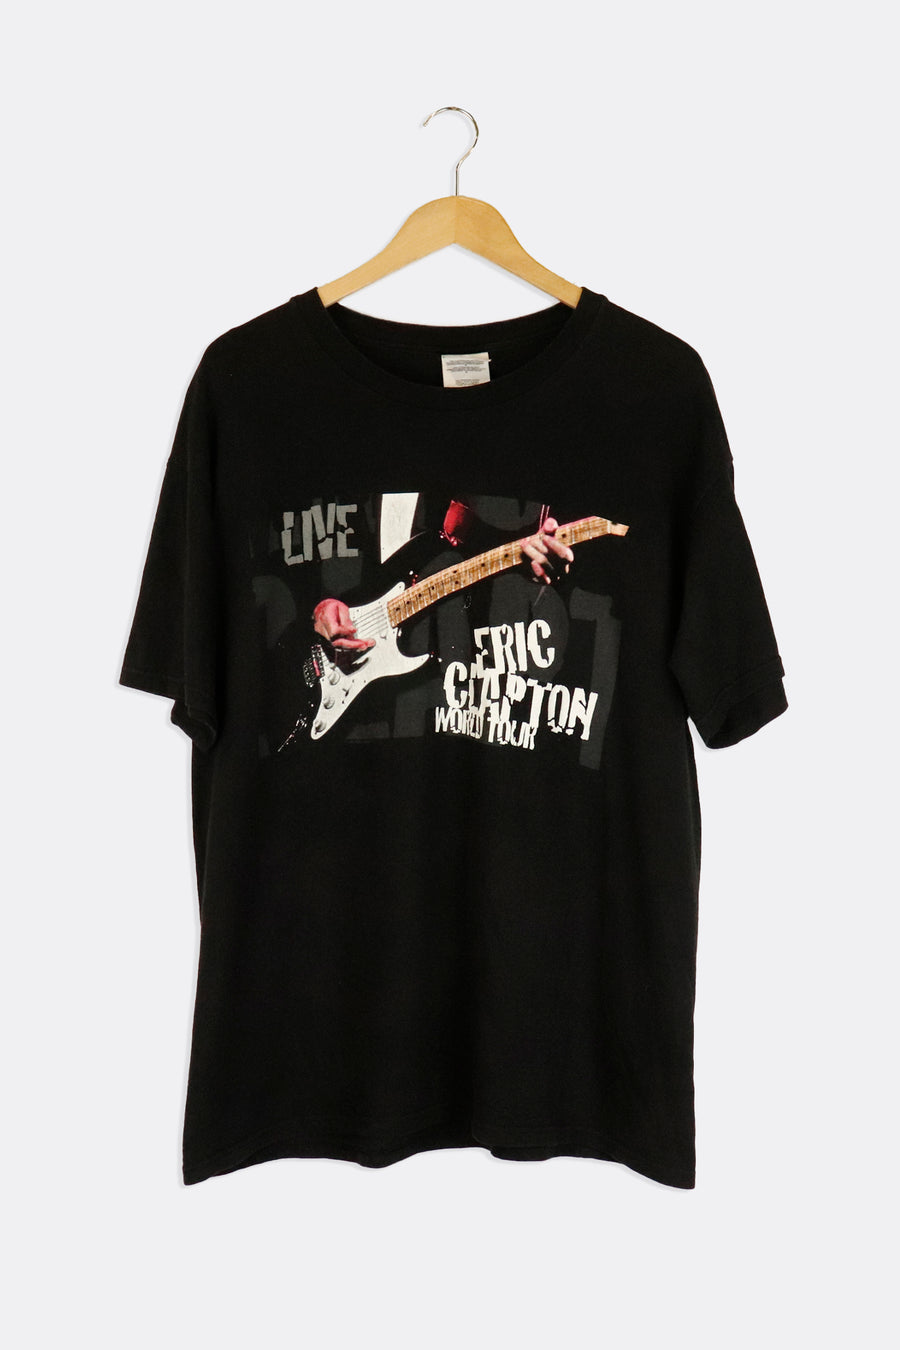 Vintage 1998 Eric Clapton Live World Tour Vinyl T Shirt Sz L